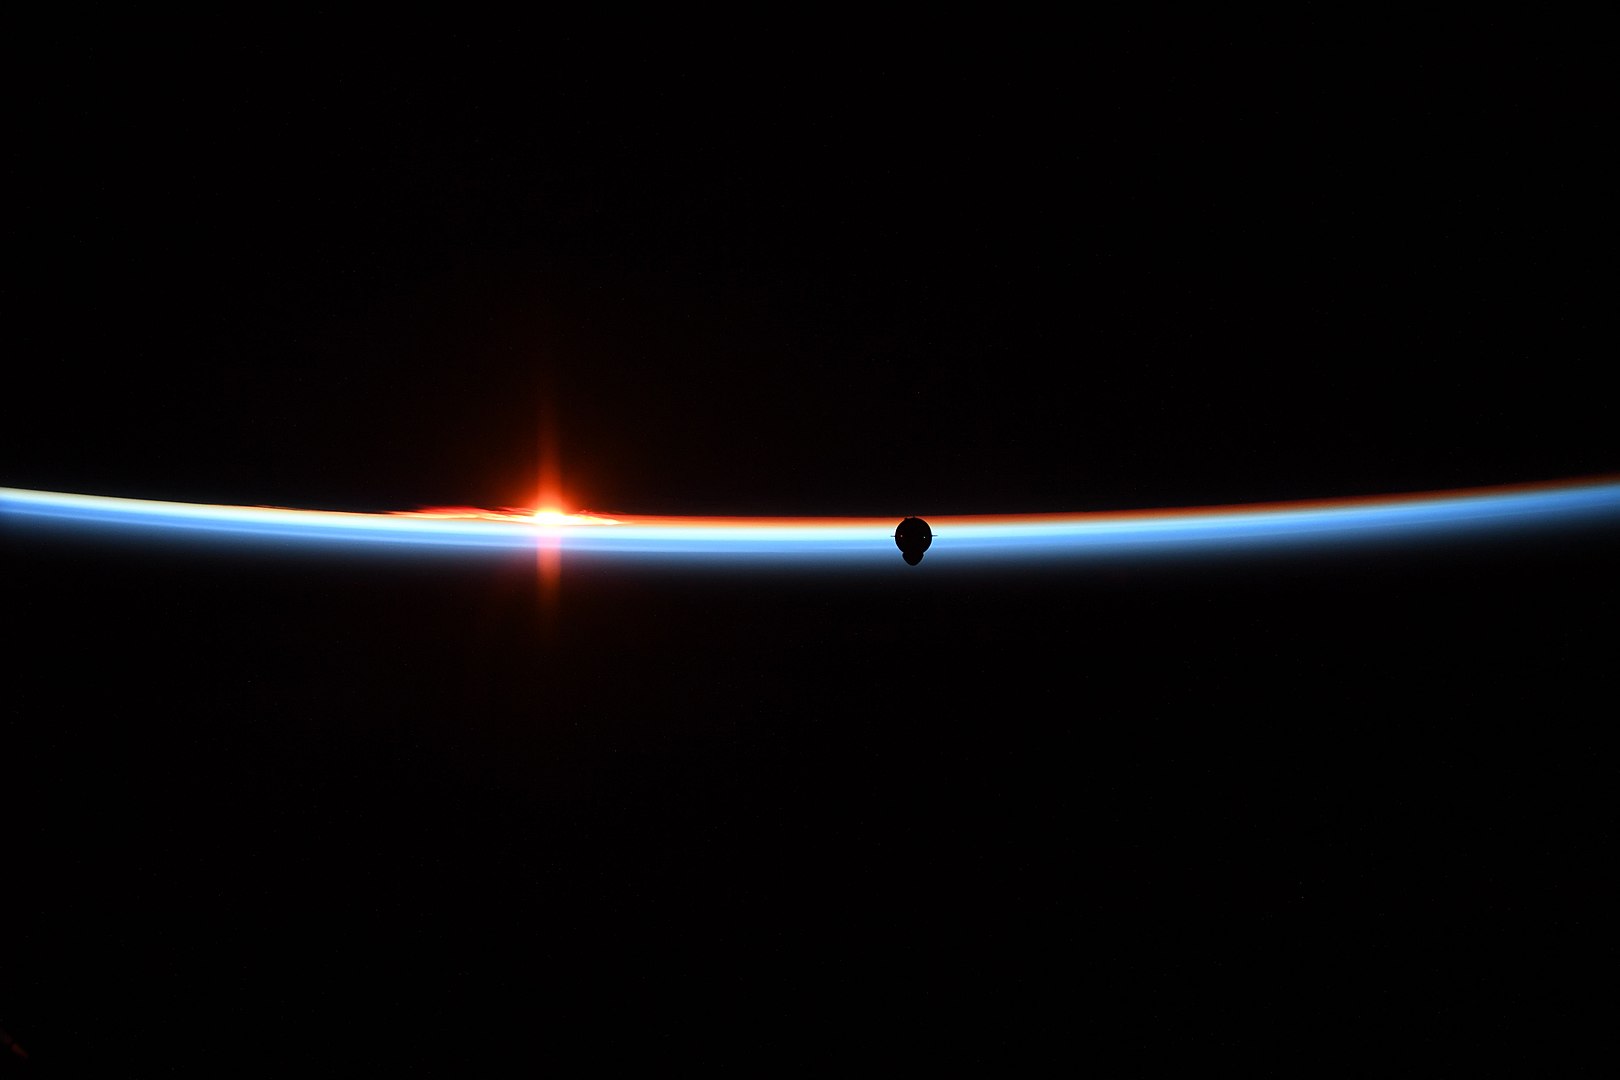 צללית חללית הדרגון במשימת דמו 1, בעודה מתקרבת לתחנת החלל הבינלאומית. קרדיט: NASA astronaut Anne McClain